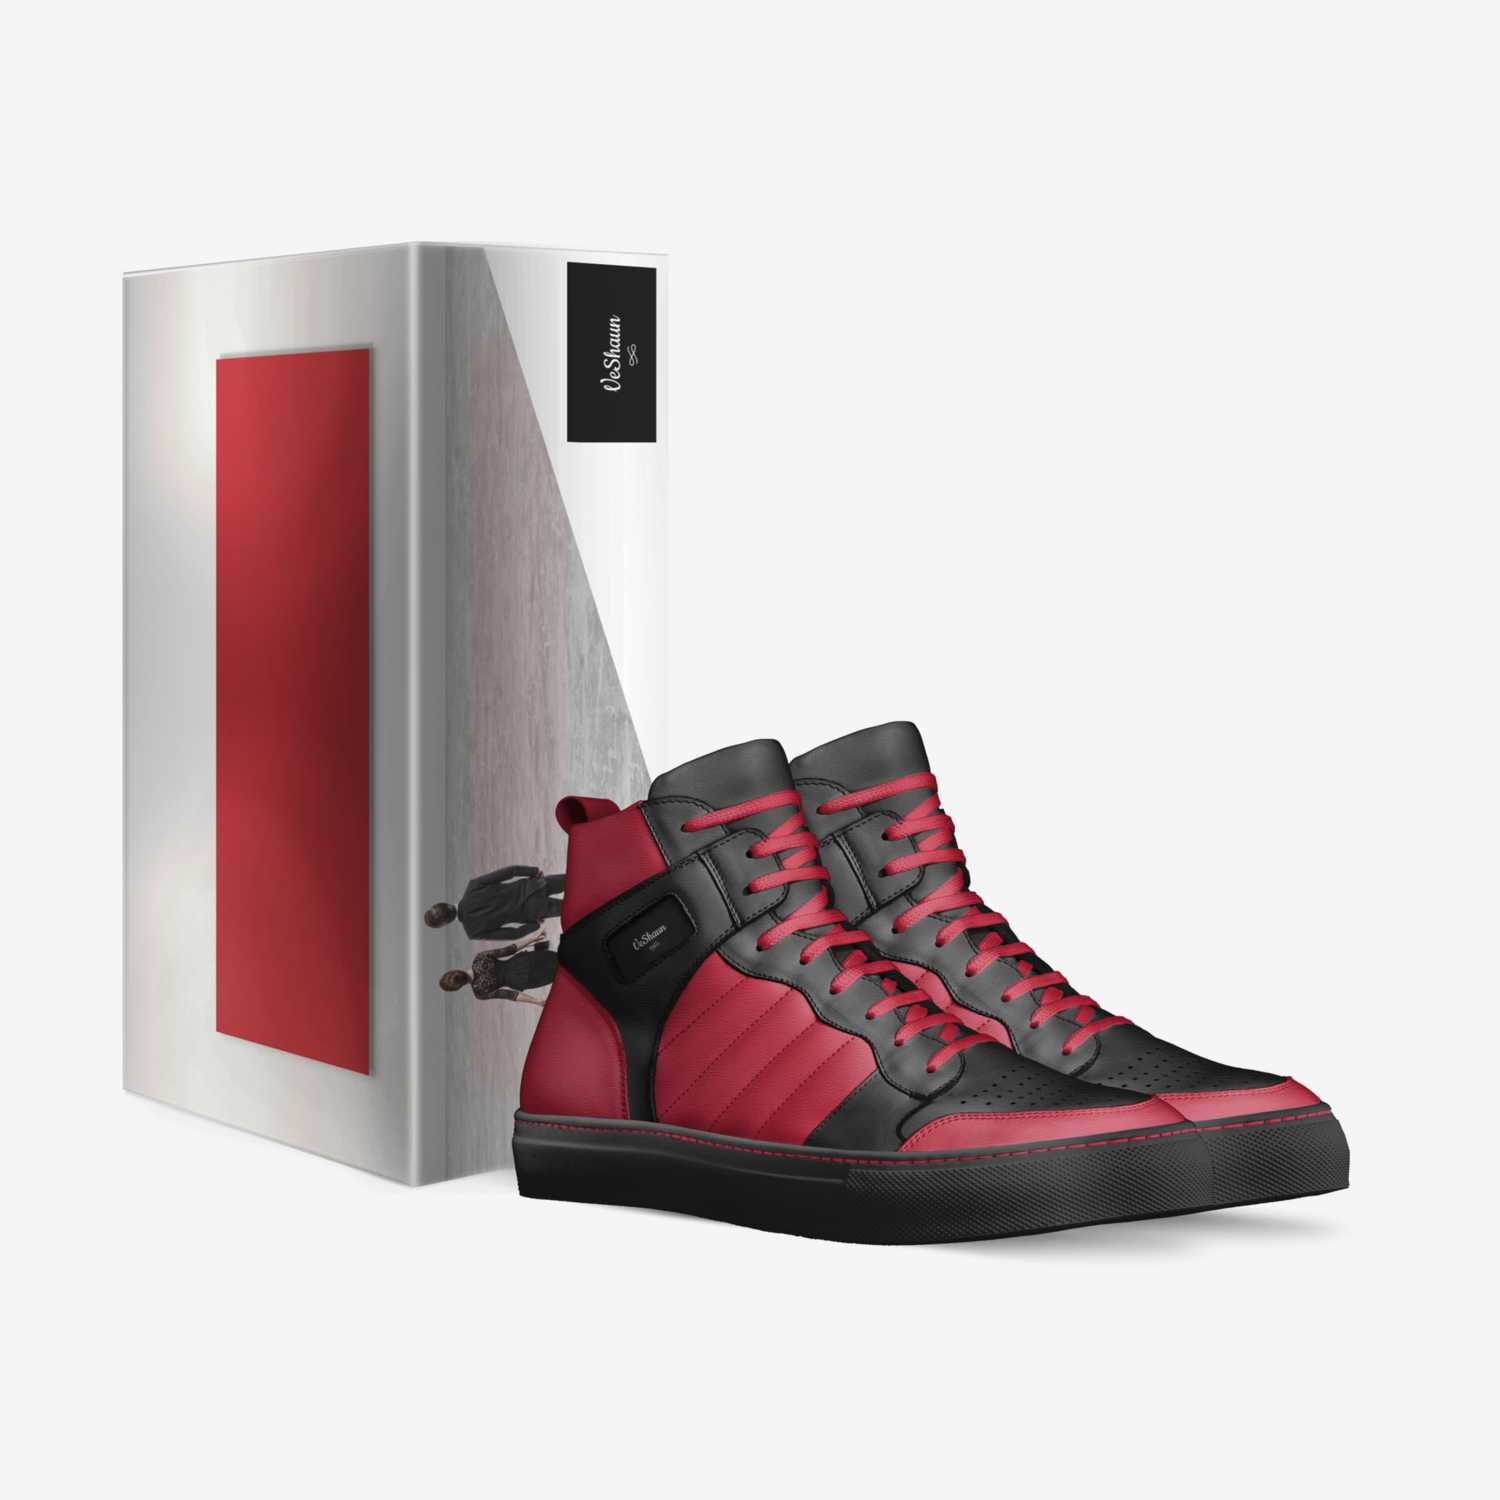 VeShaun custom made in Italy shoes by Ayrehaud Jones | Box view